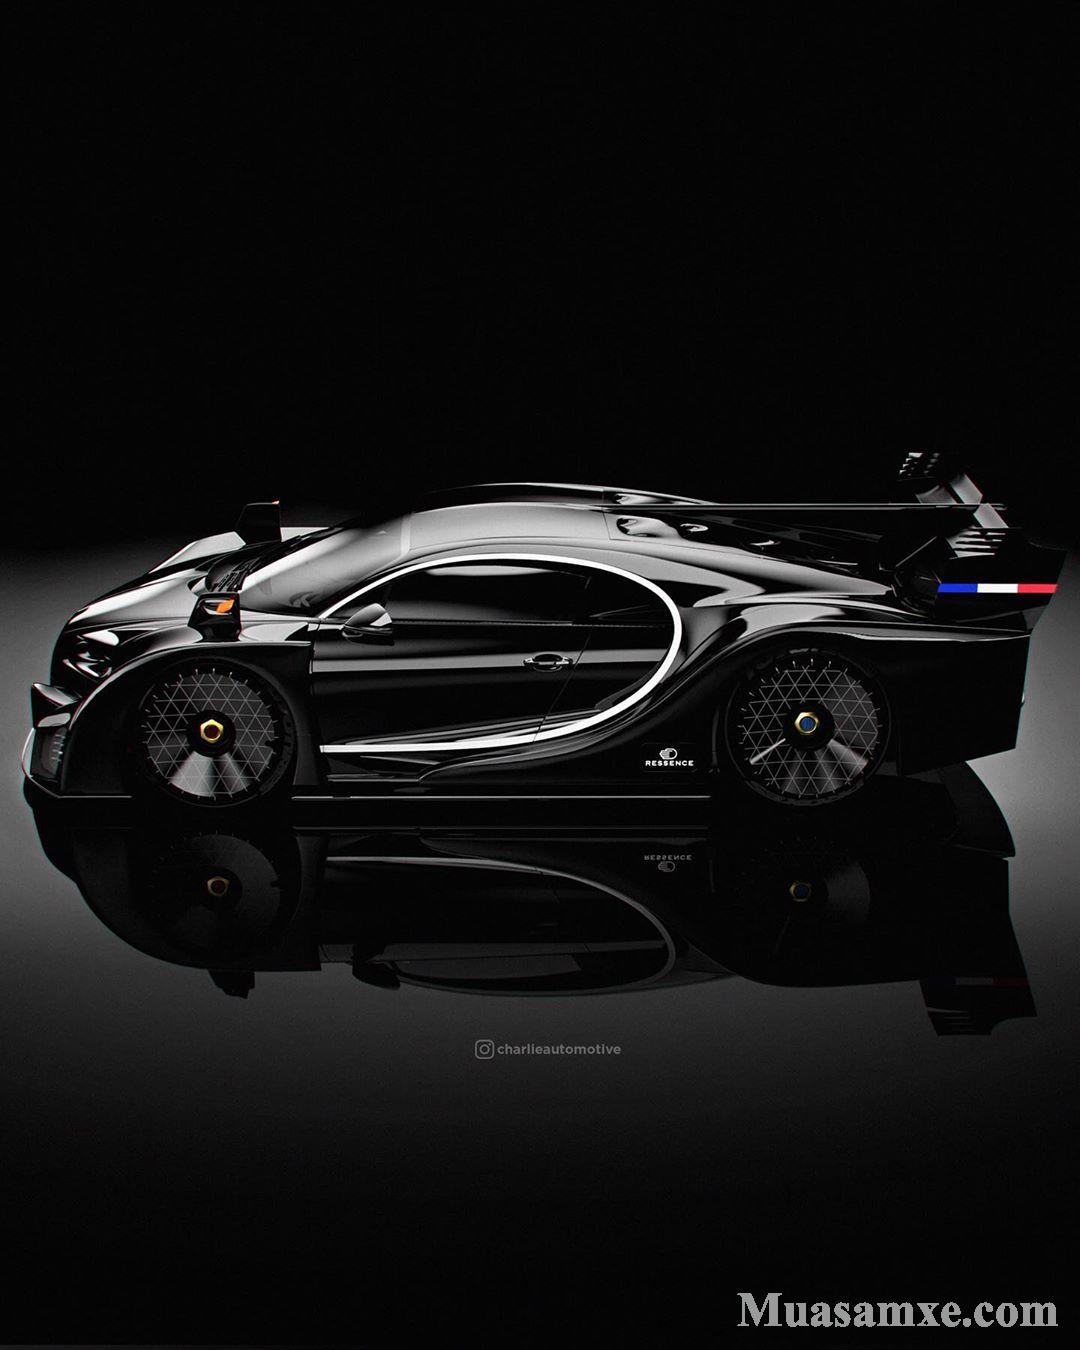 Được phát triển dựa trên mẫu Bugatti Chiron